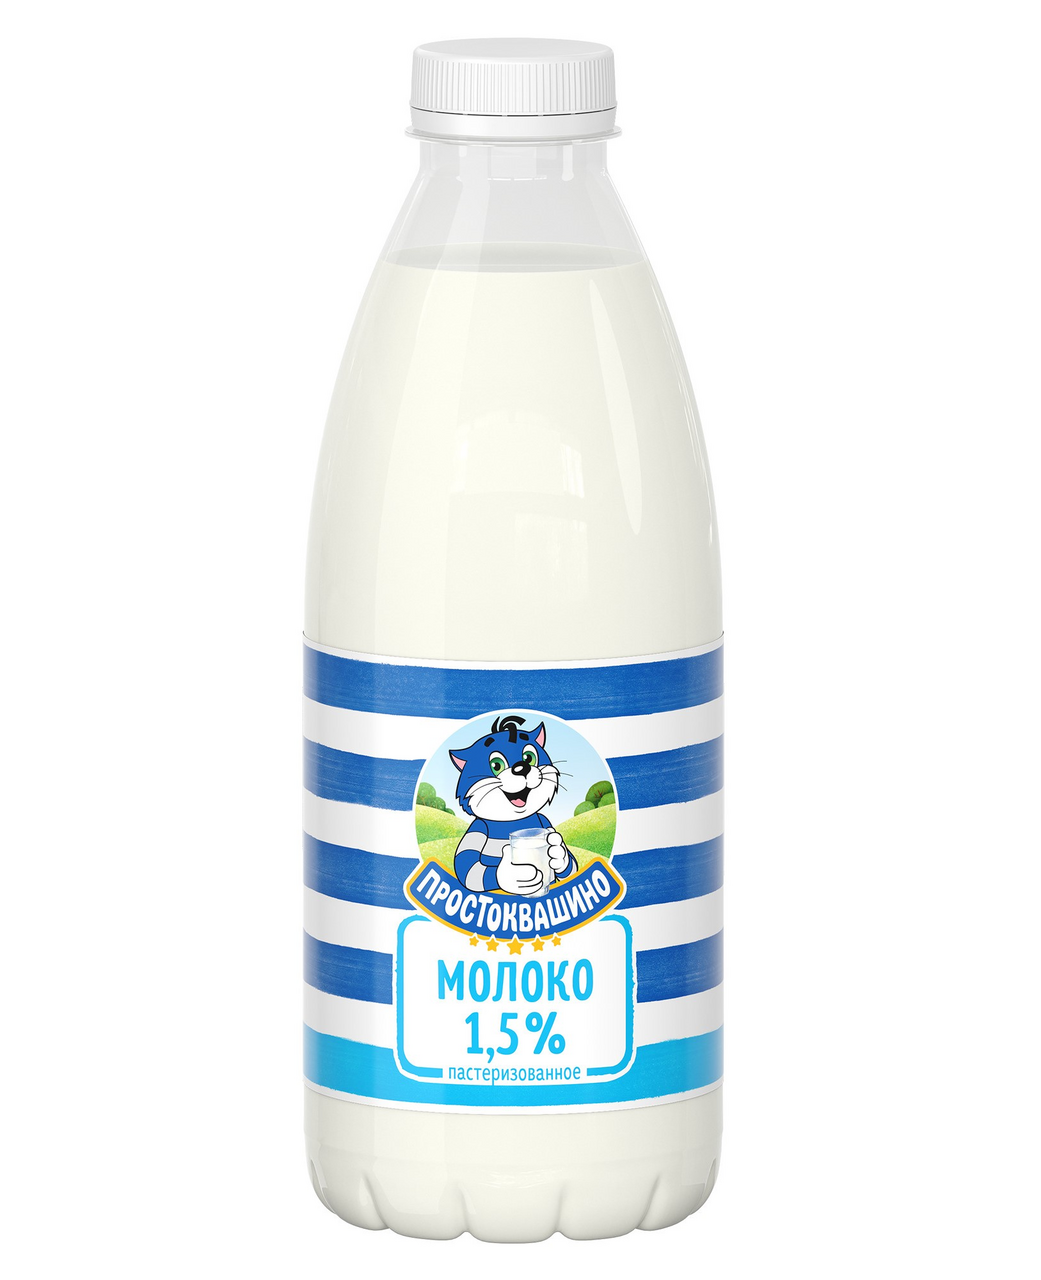 Молоко ПРОСТОКВАШИНО 1,5% питьевое, 930г